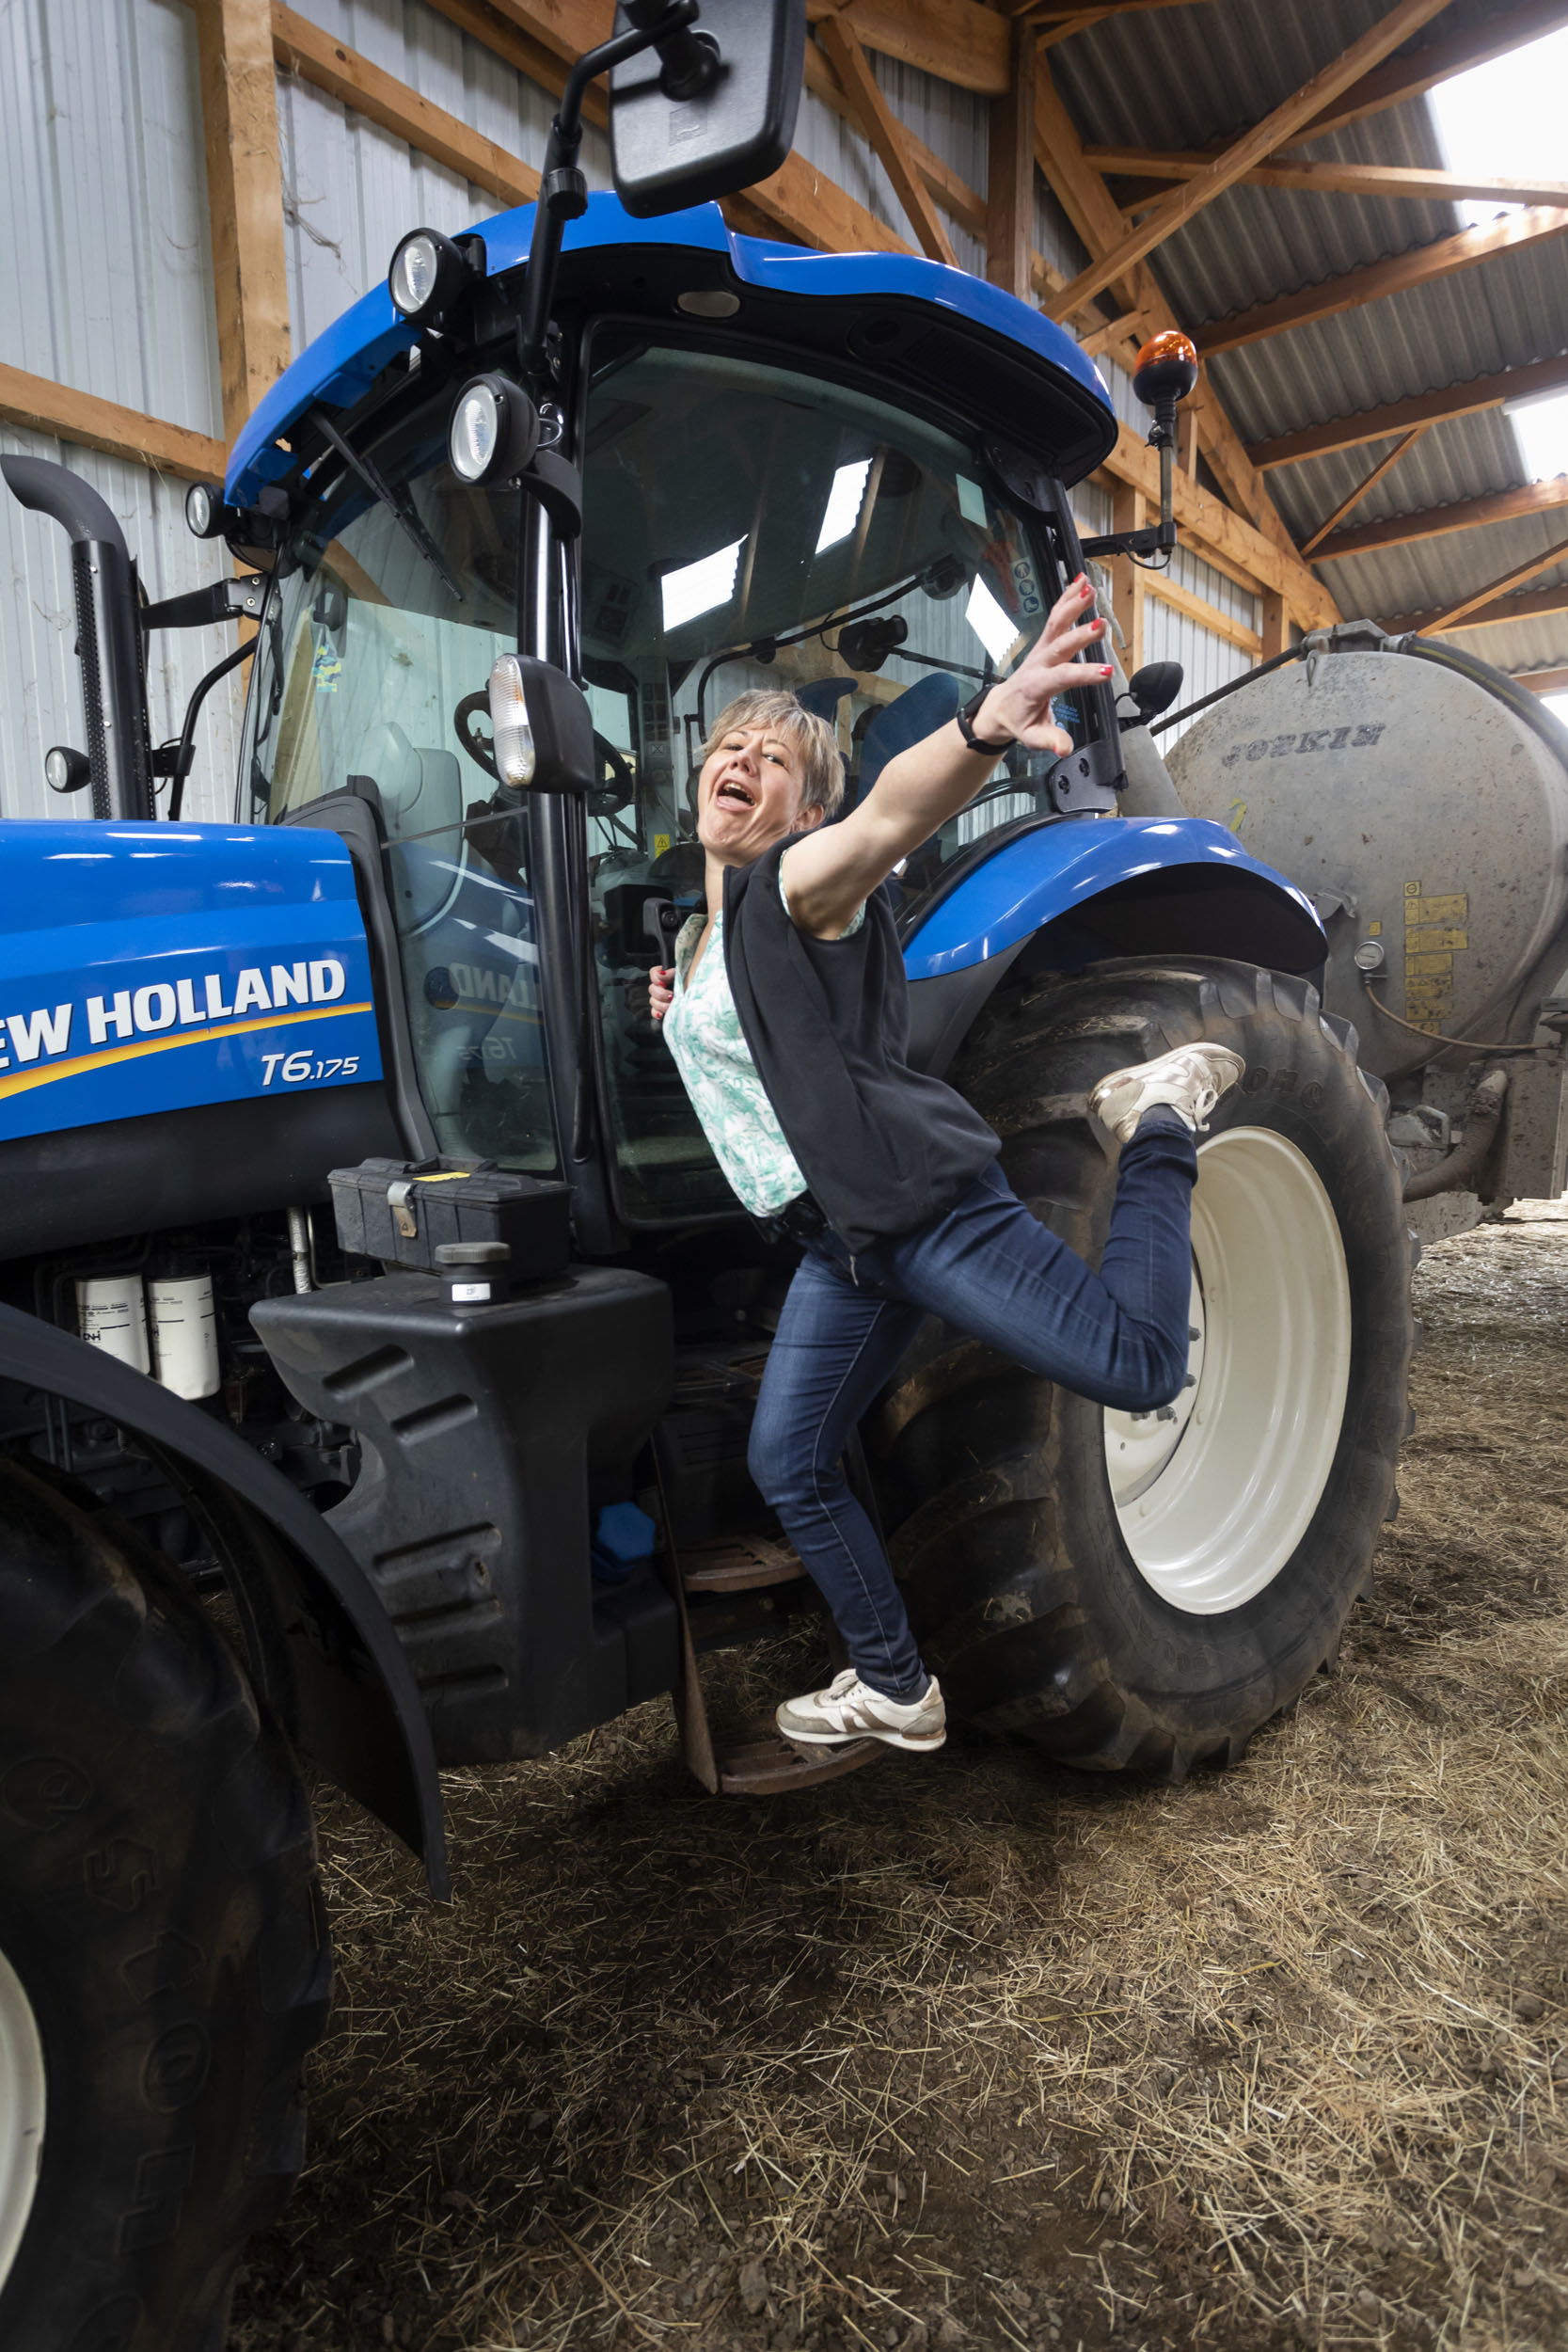 Portrait de vie d'une femme heureuse devant son tracteur qui prends plaisir à le conduire. Client : Cerfrance